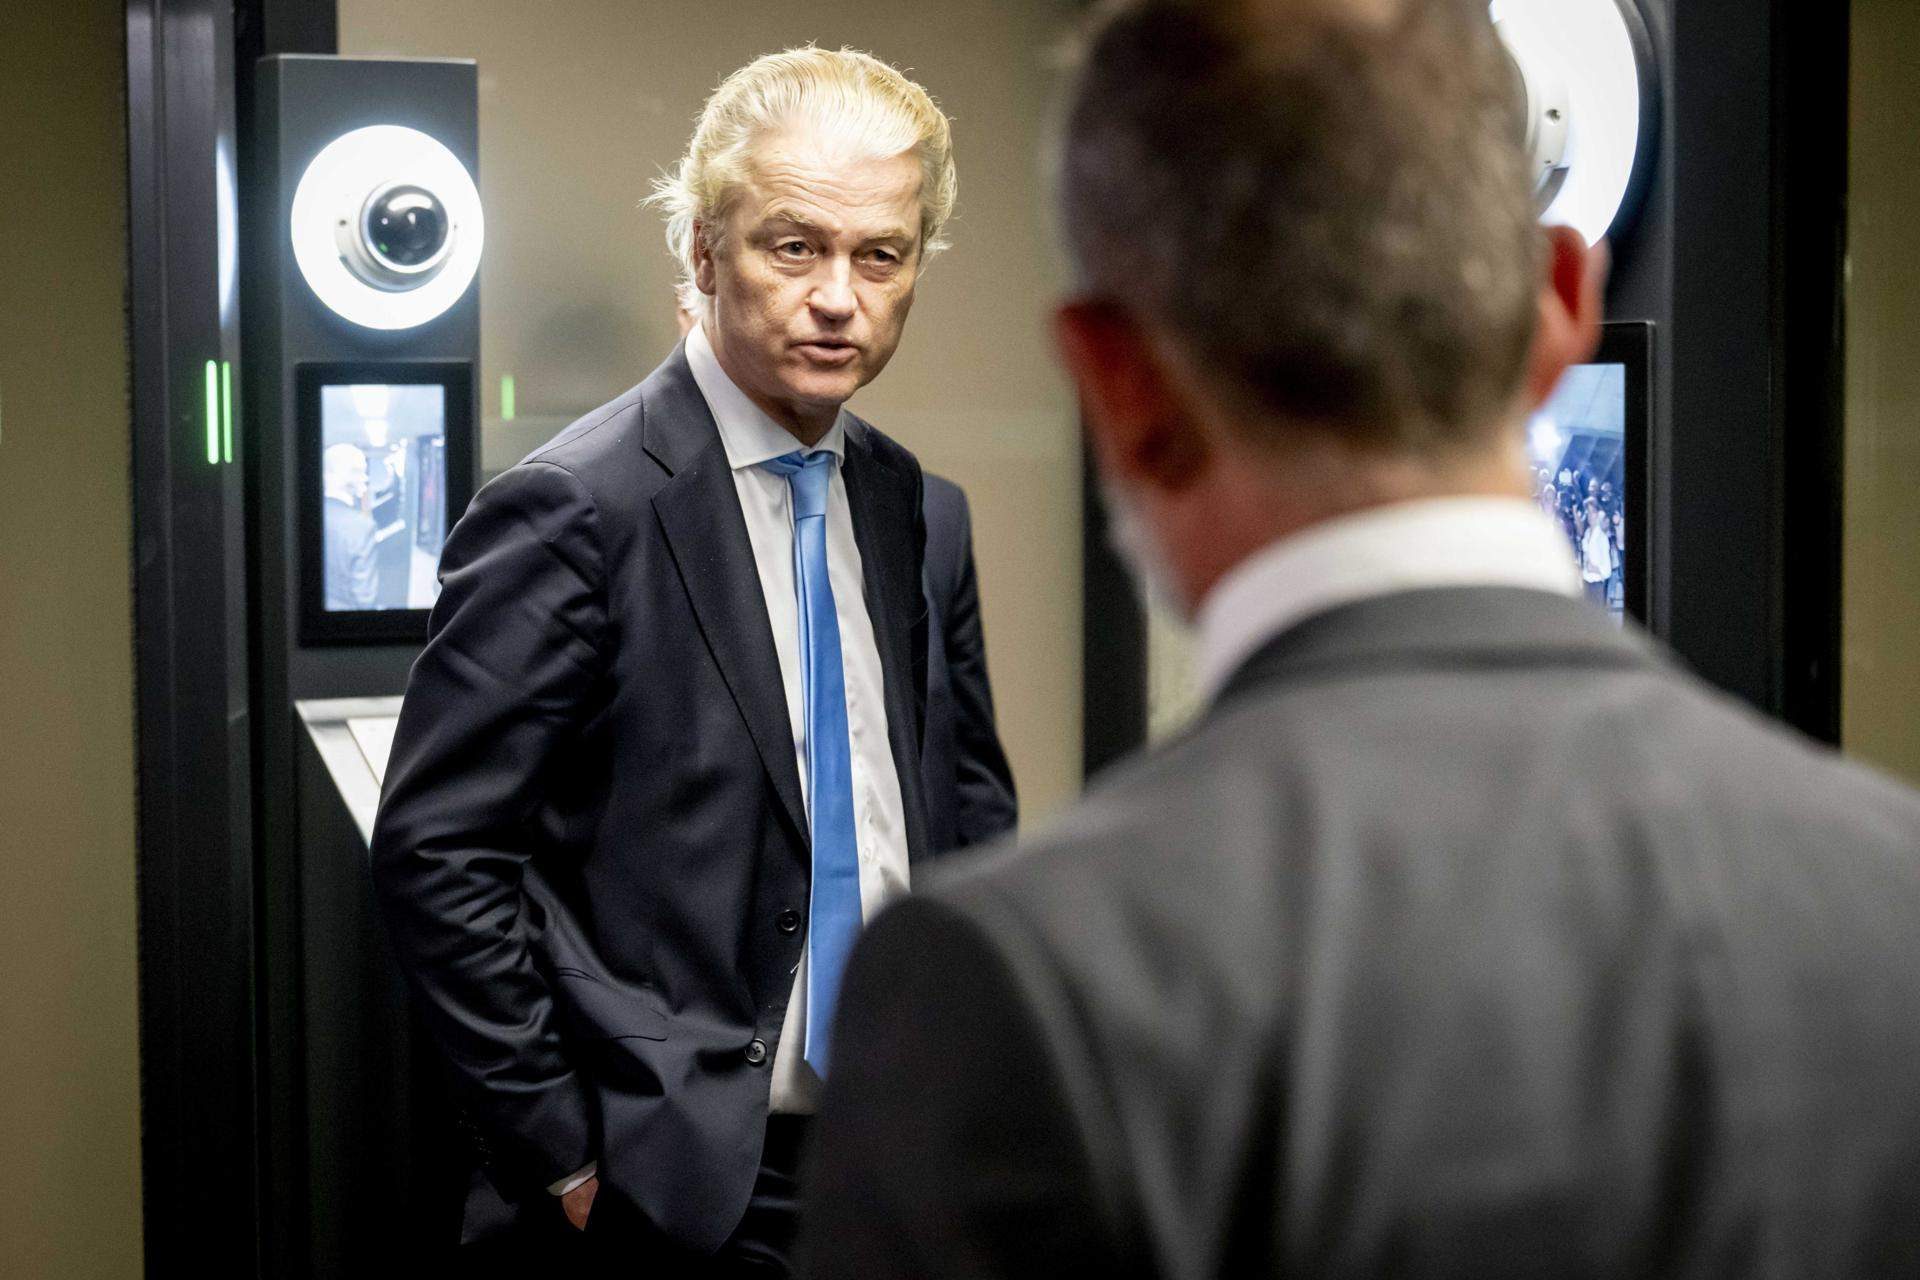 El ultraderechista Geert Wilders llega a un acuerdo de gobierno con el centroderecha en Países Bajos